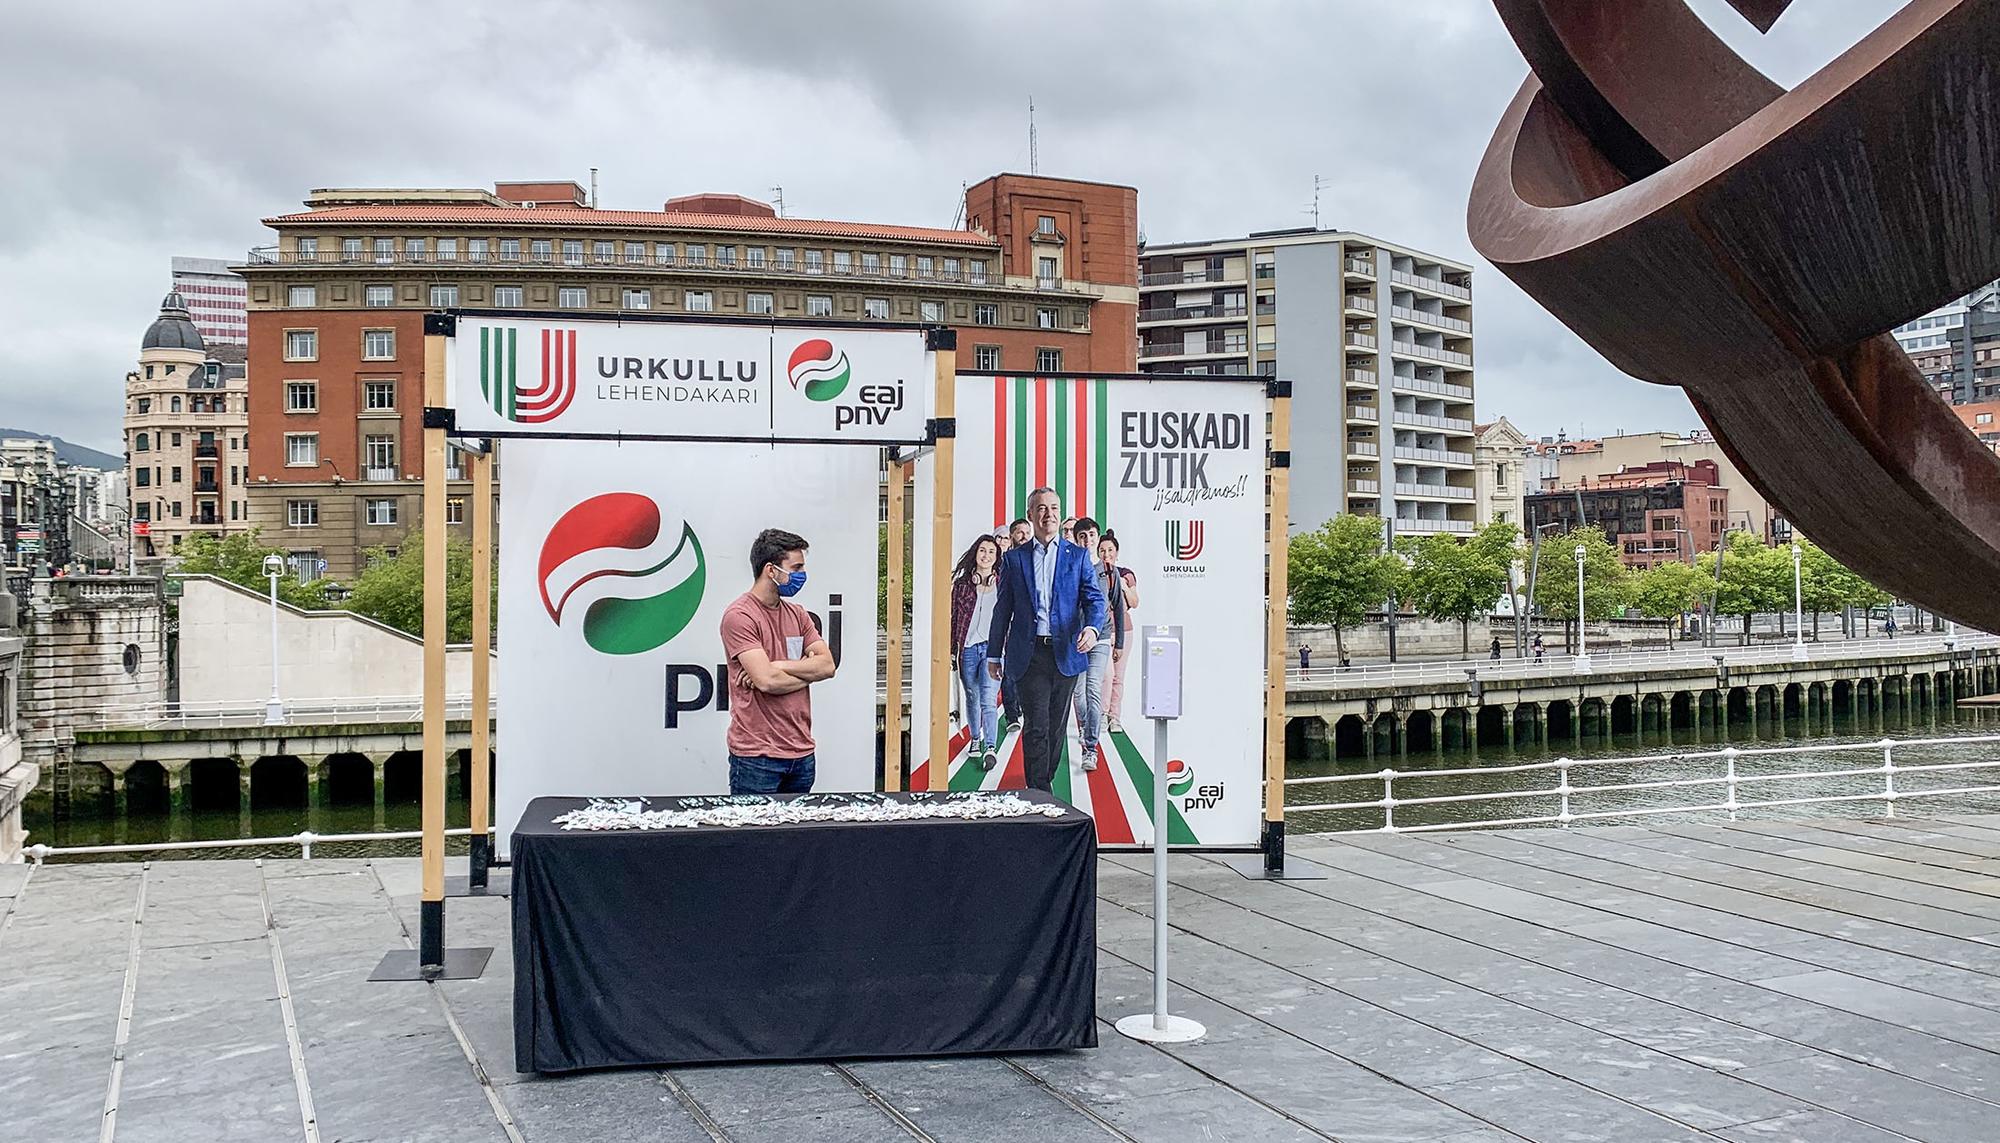 Puesto electoral del PNV vacía el último día de campaña electoral en el País Vasco.